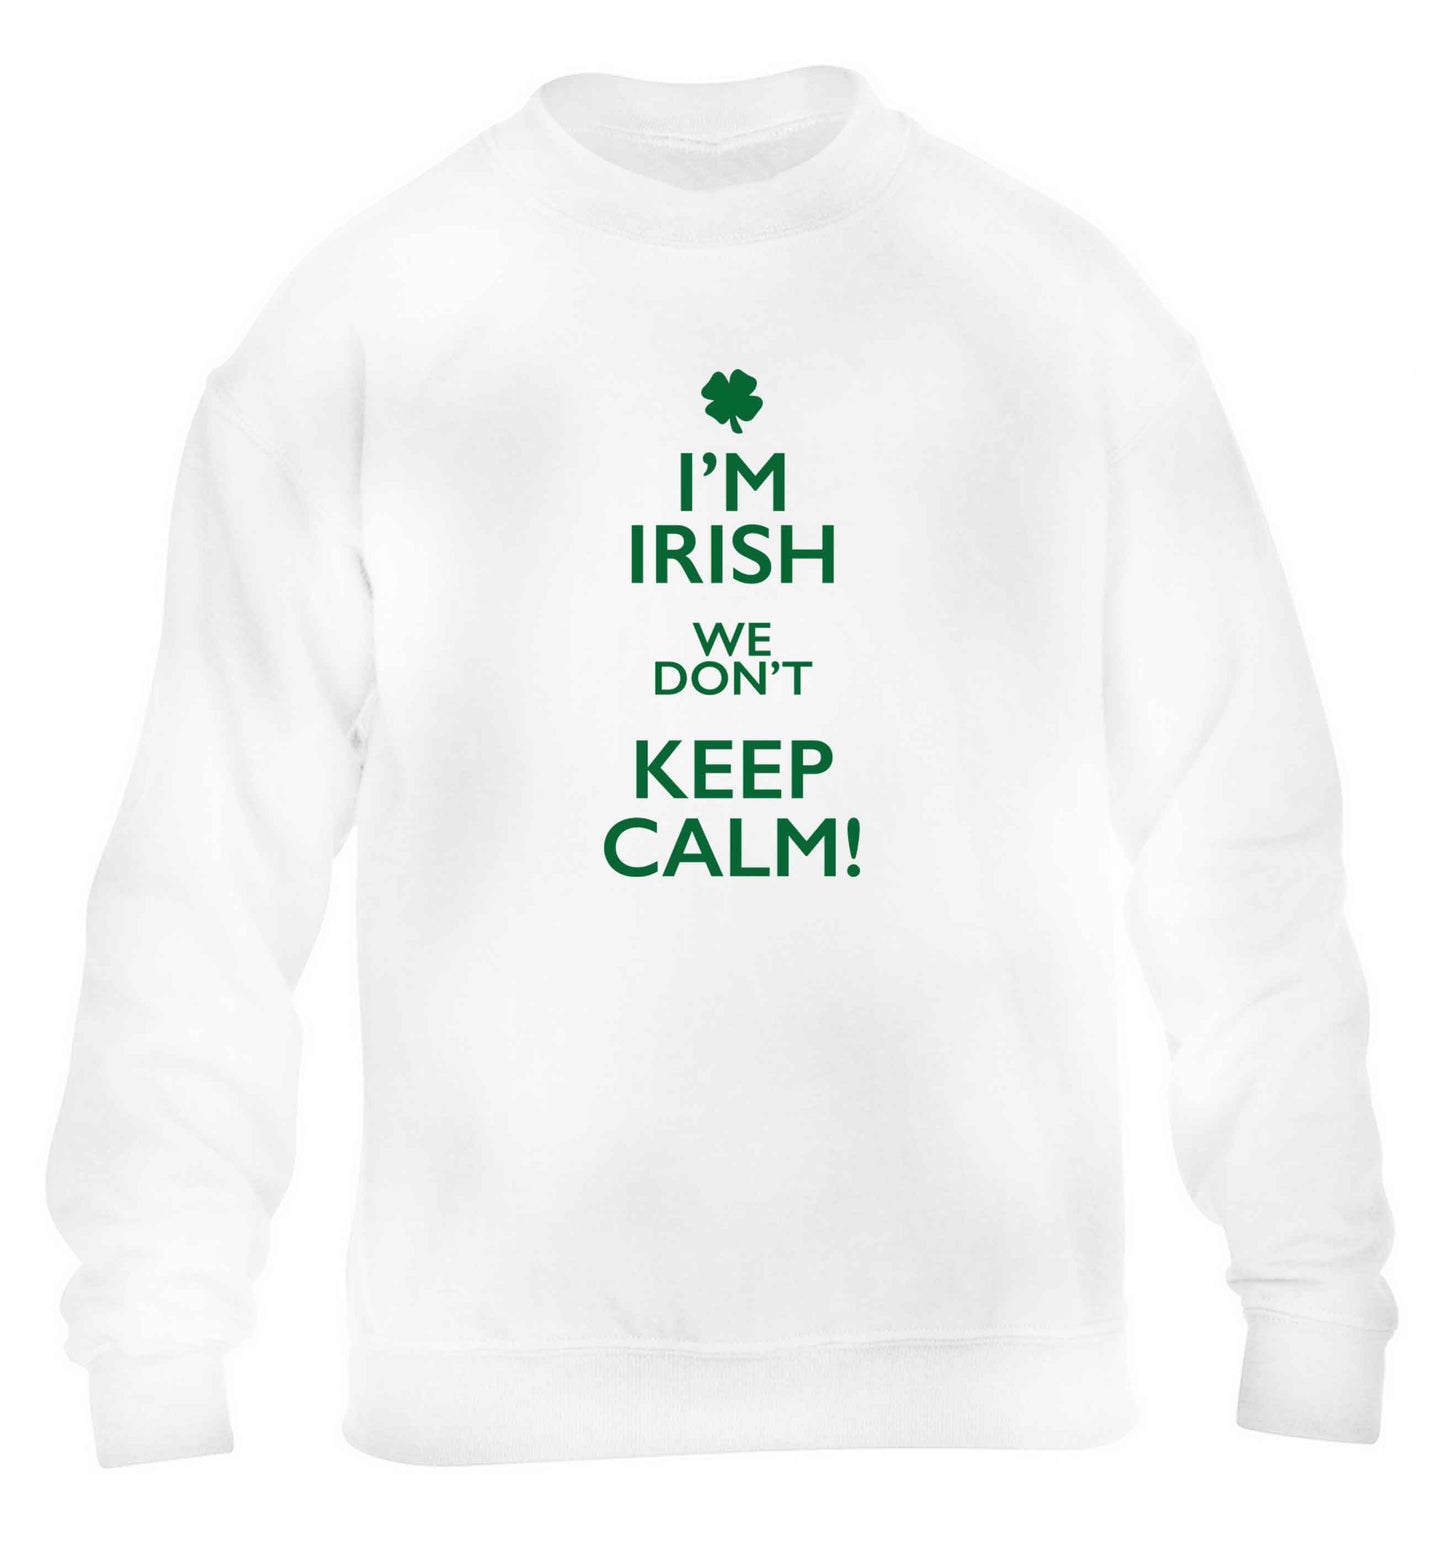 I'm Irish we don't keep calm children's white sweater 12-13 Years